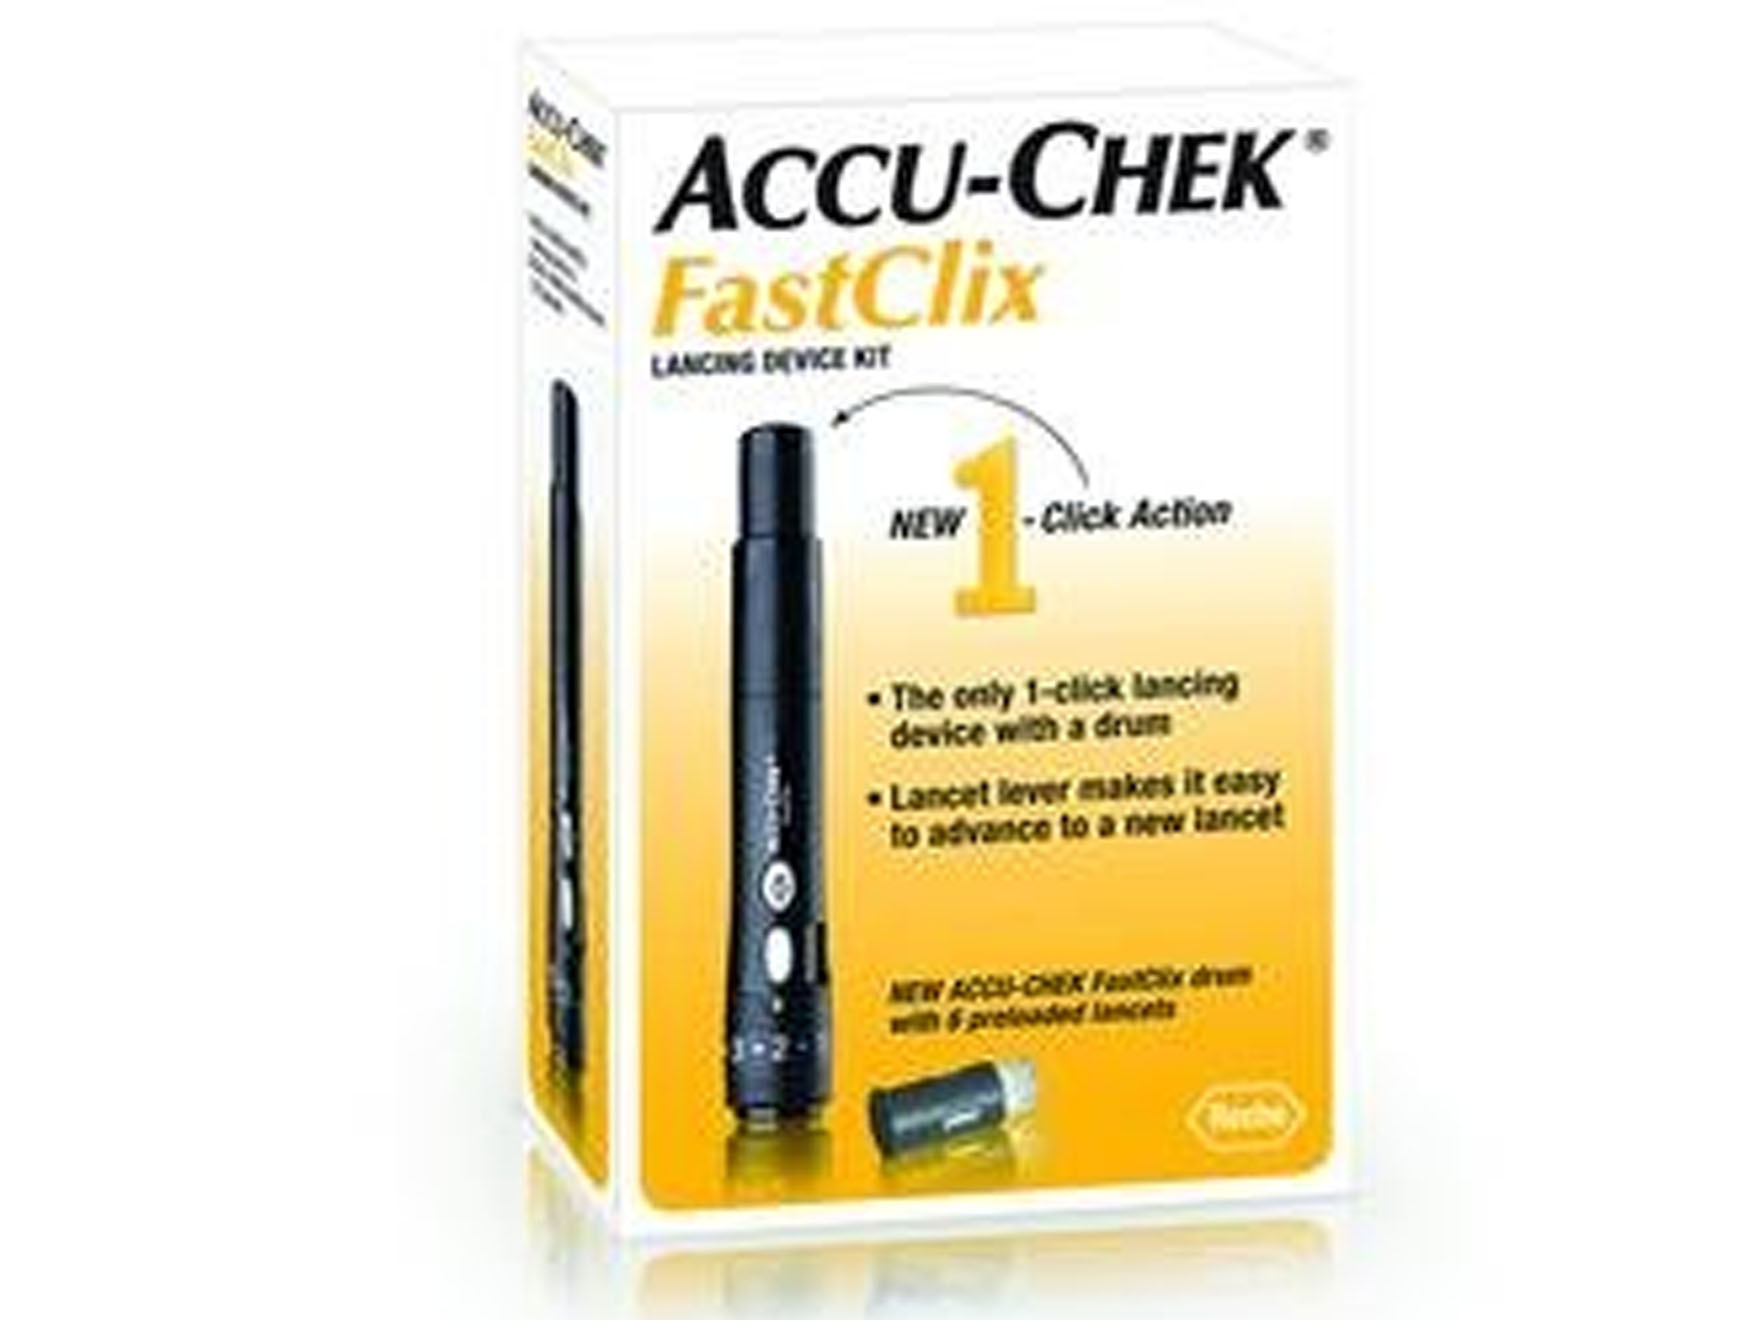 Accu-chek Fastclix - prikpen - 1 st